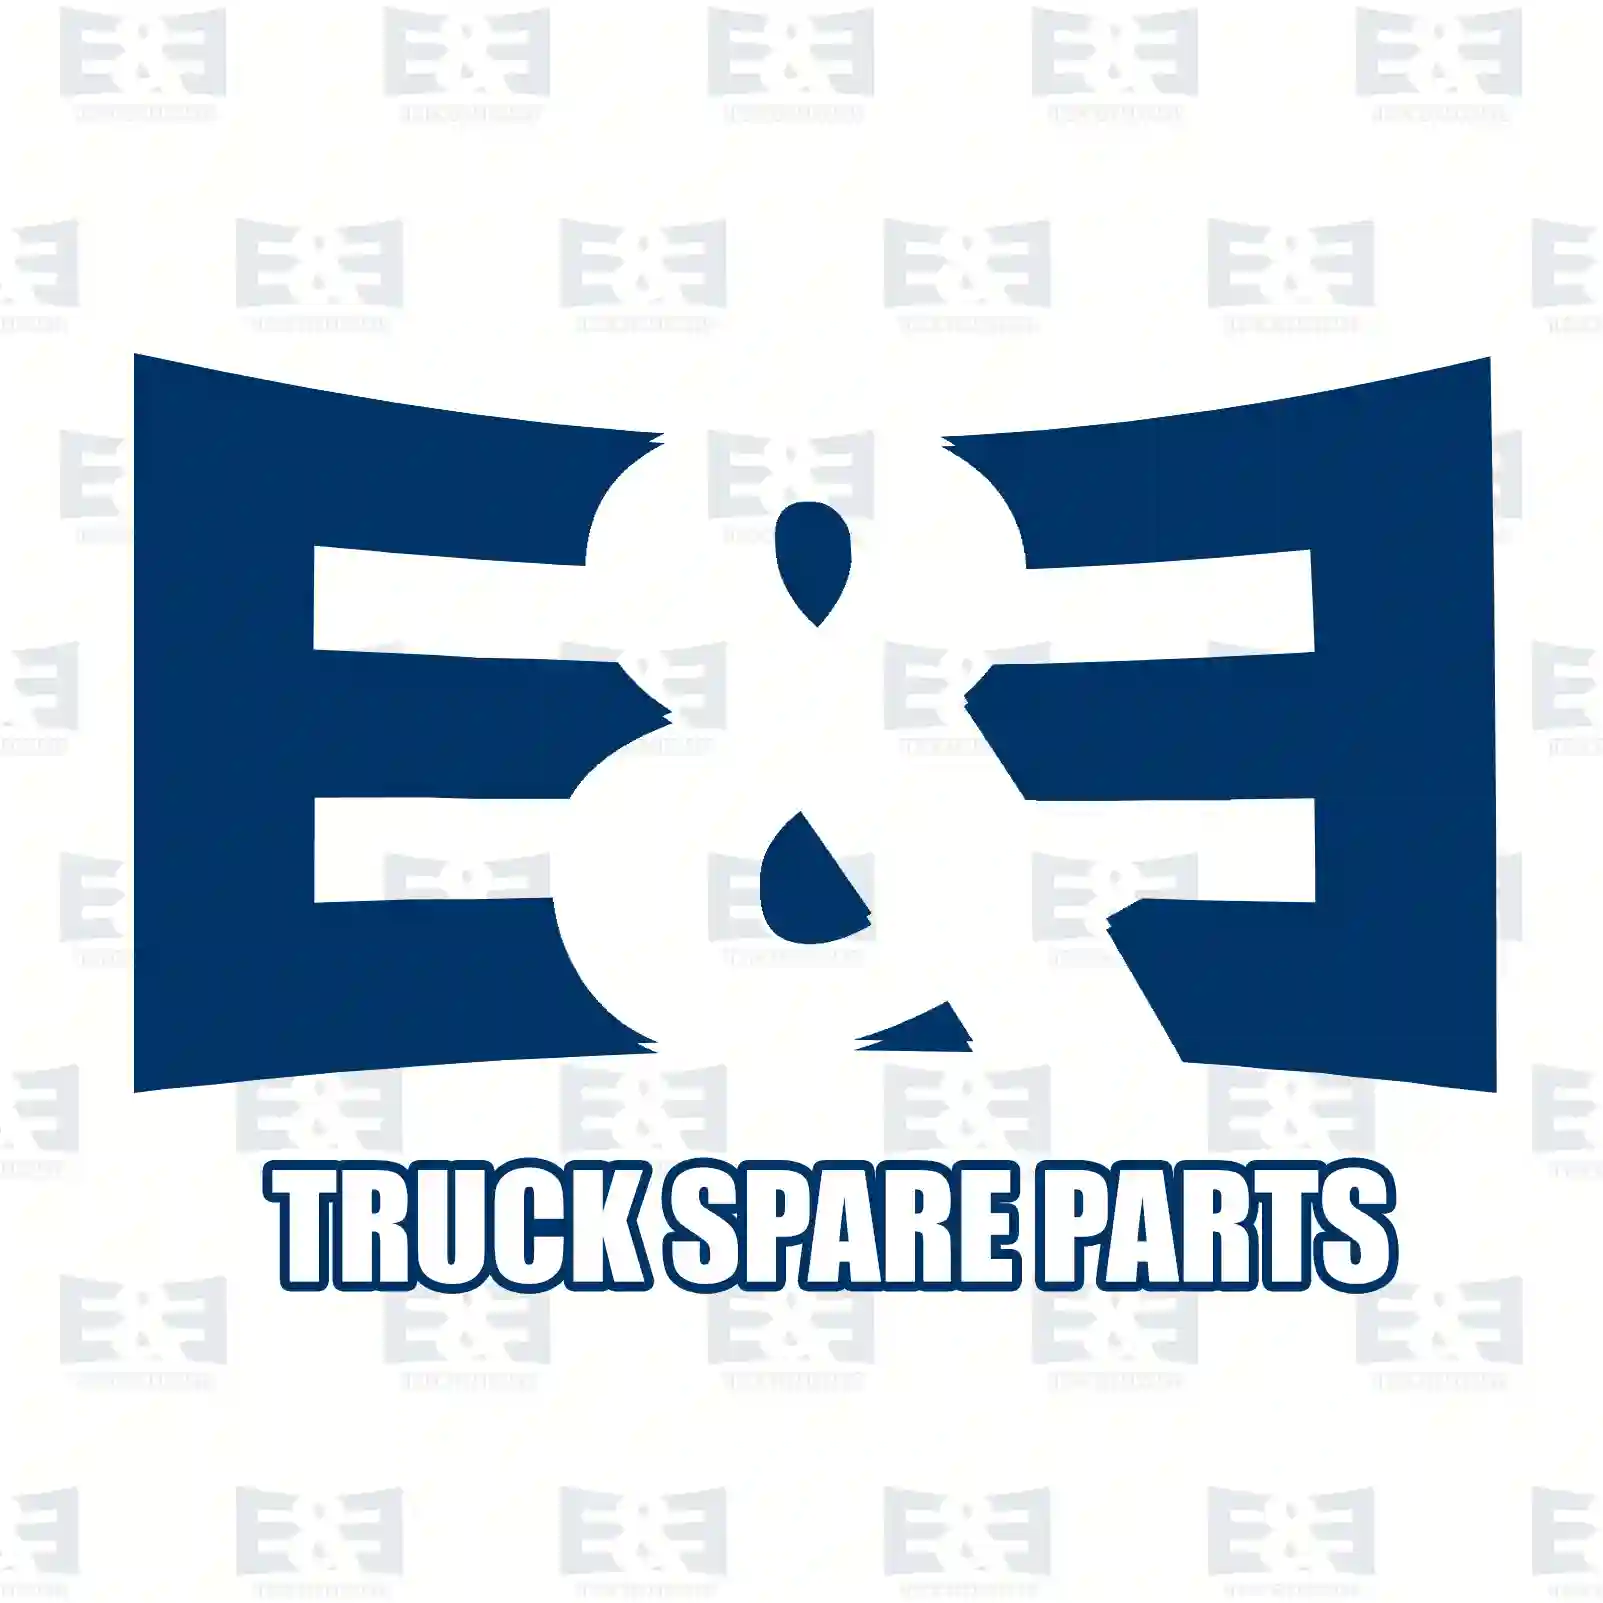 Brake disc, 2E2294031, 67746687, 6796864, 67968644, 67968647, , ||  2E2294031 E&E Truck Spare Parts | Truck Spare Parts, Auotomotive Spare Parts Brake disc, 2E2294031, 67746687, 6796864, 67968644, 67968647, , ||  2E2294031 E&E Truck Spare Parts | Truck Spare Parts, Auotomotive Spare Parts